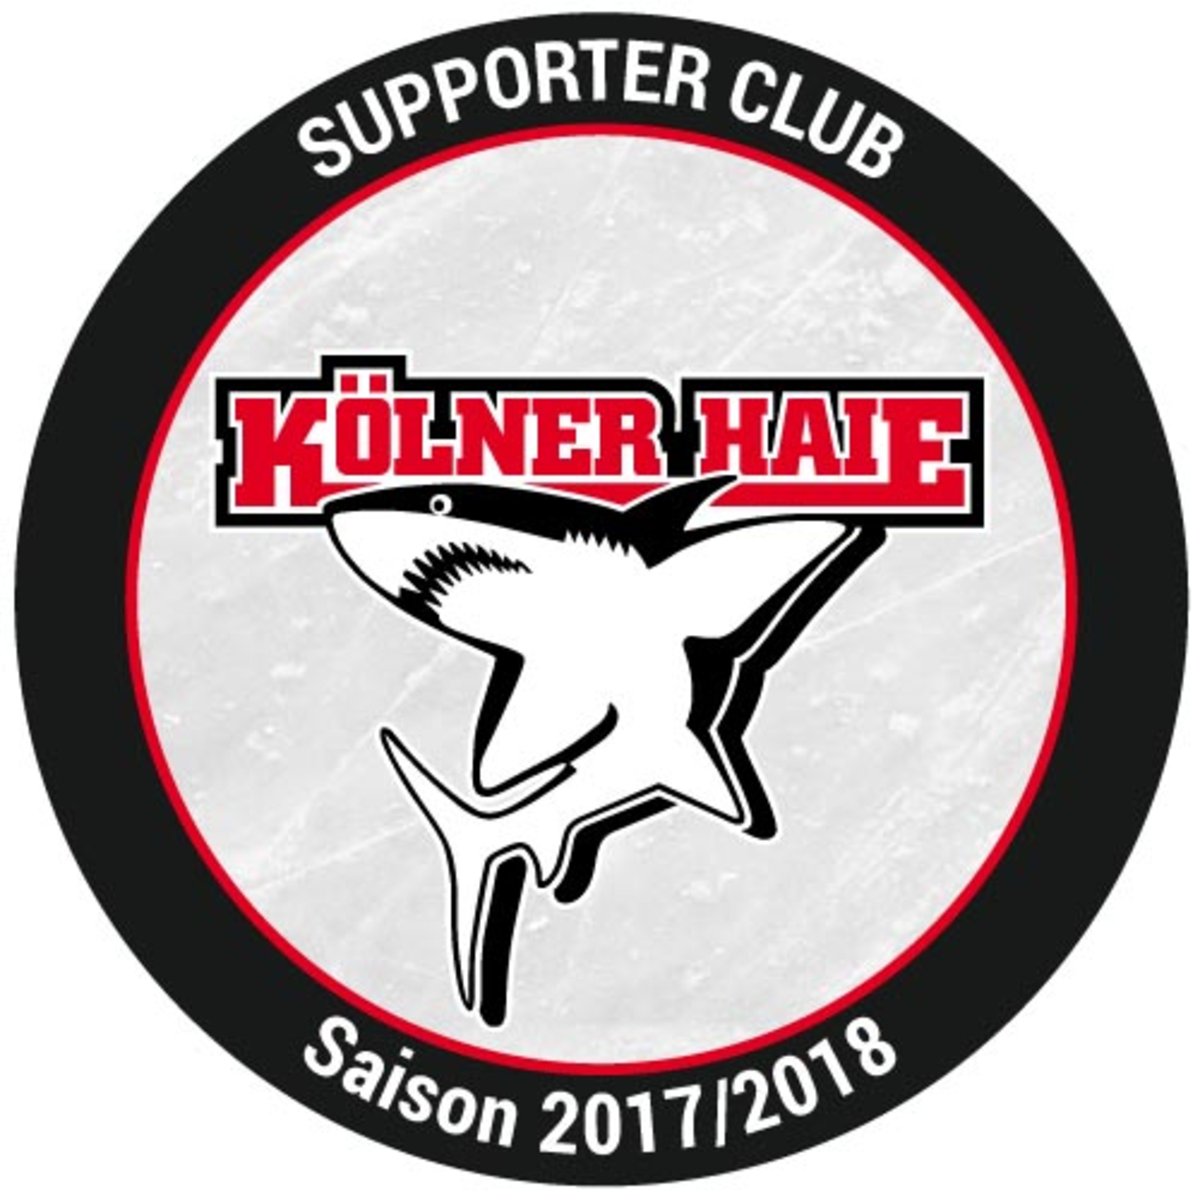 ALDAK als Supporter Club der Kölner Haie 2017/18